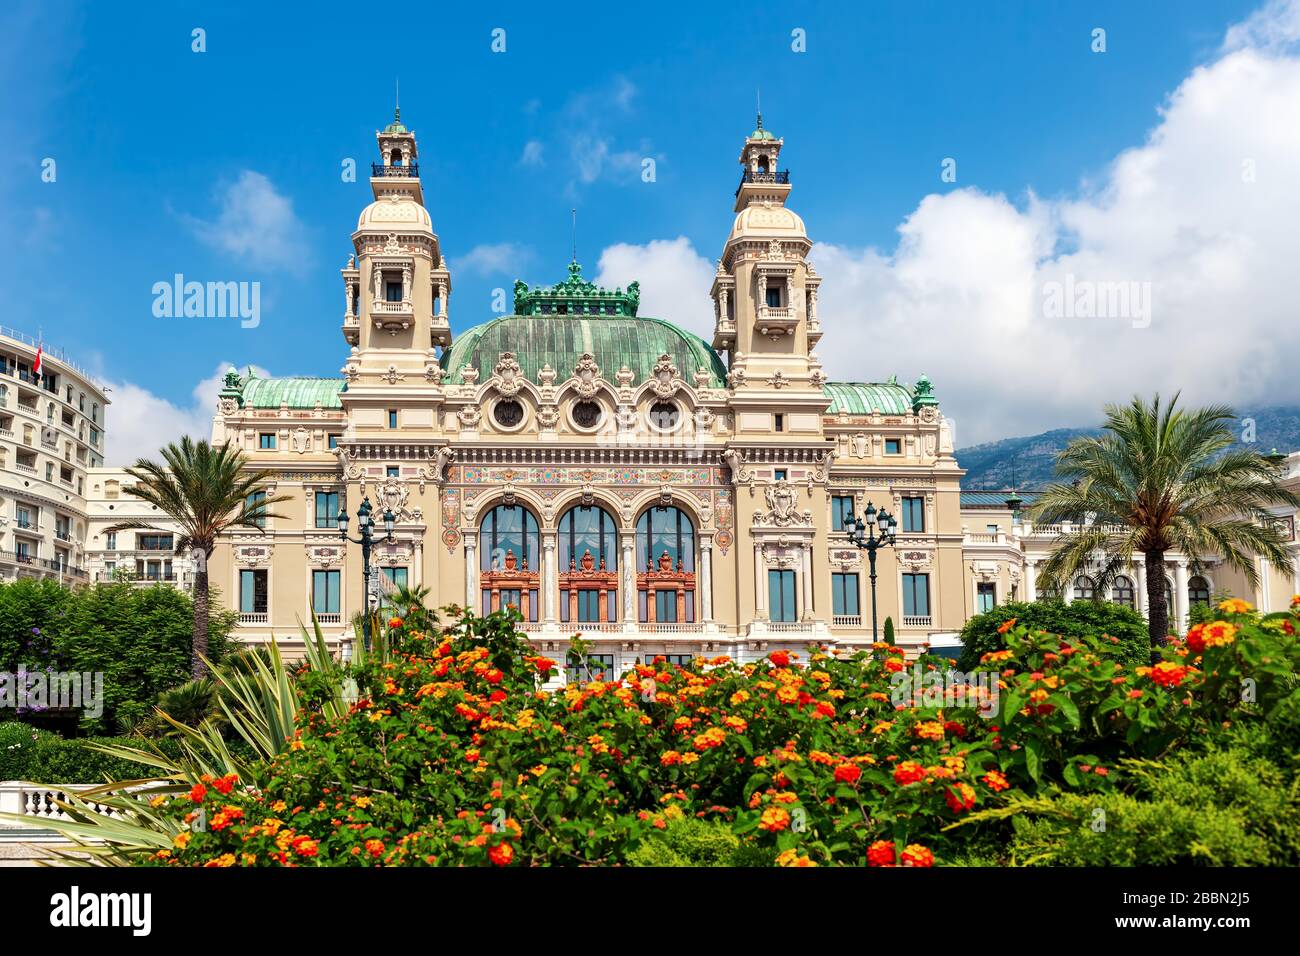 Facade of Salle Garnier - gambling and entertainment complex in Monte Carlo, Monaco. Stock Photo